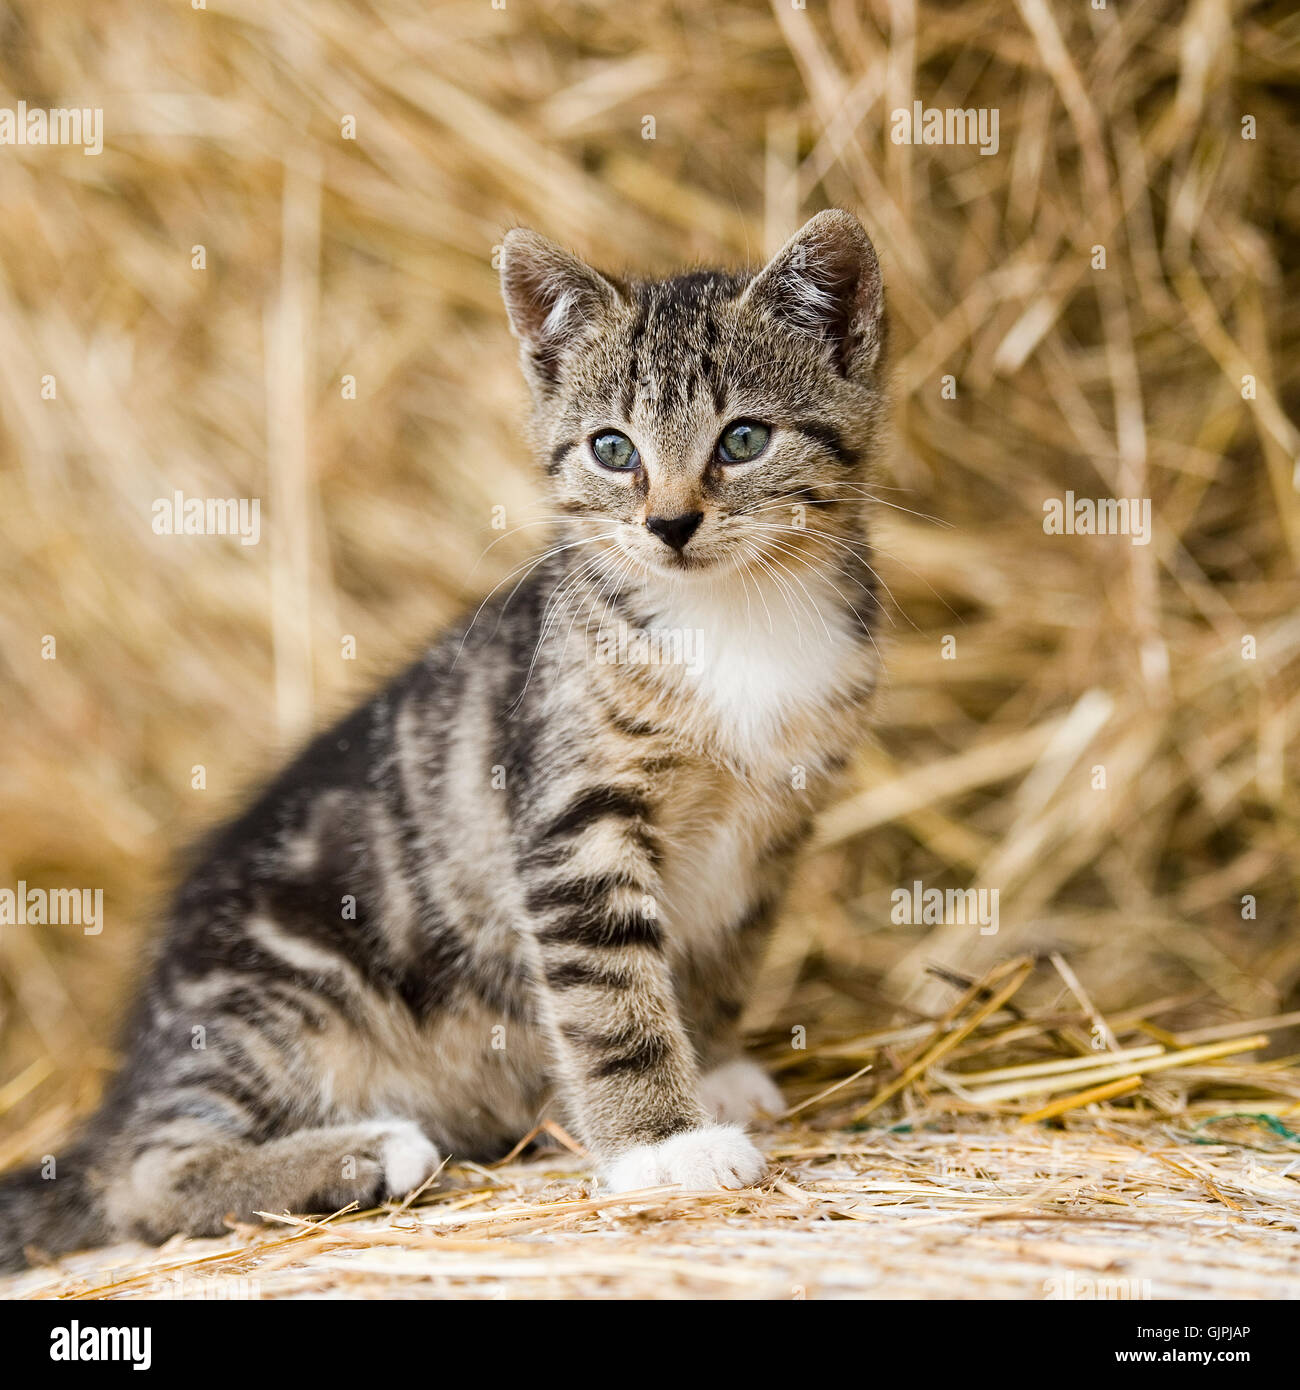 cat, kitten Stock Photo